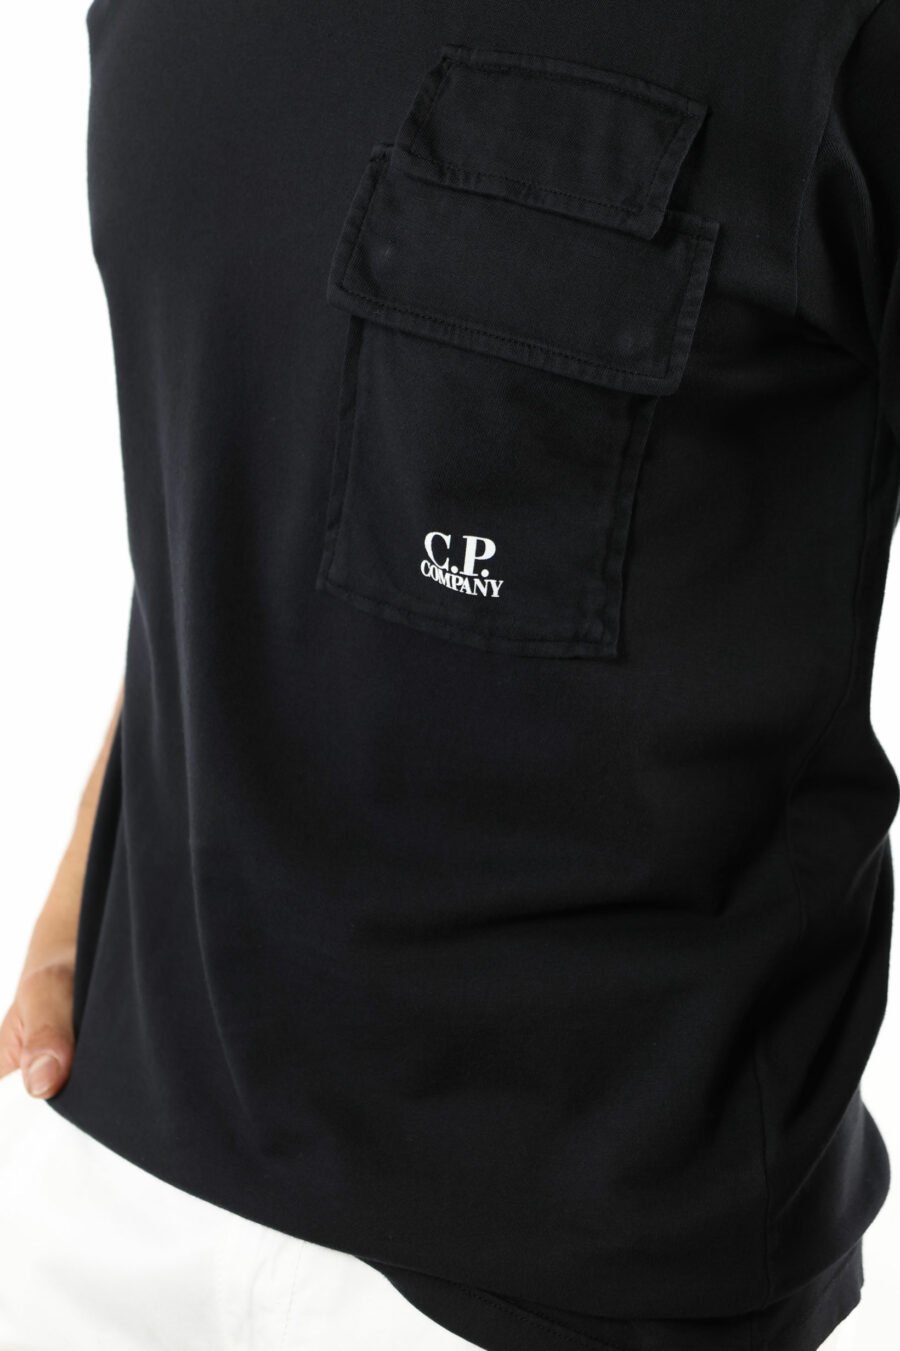 T-shirt noir avec poches et mini logo "cp" - 111331